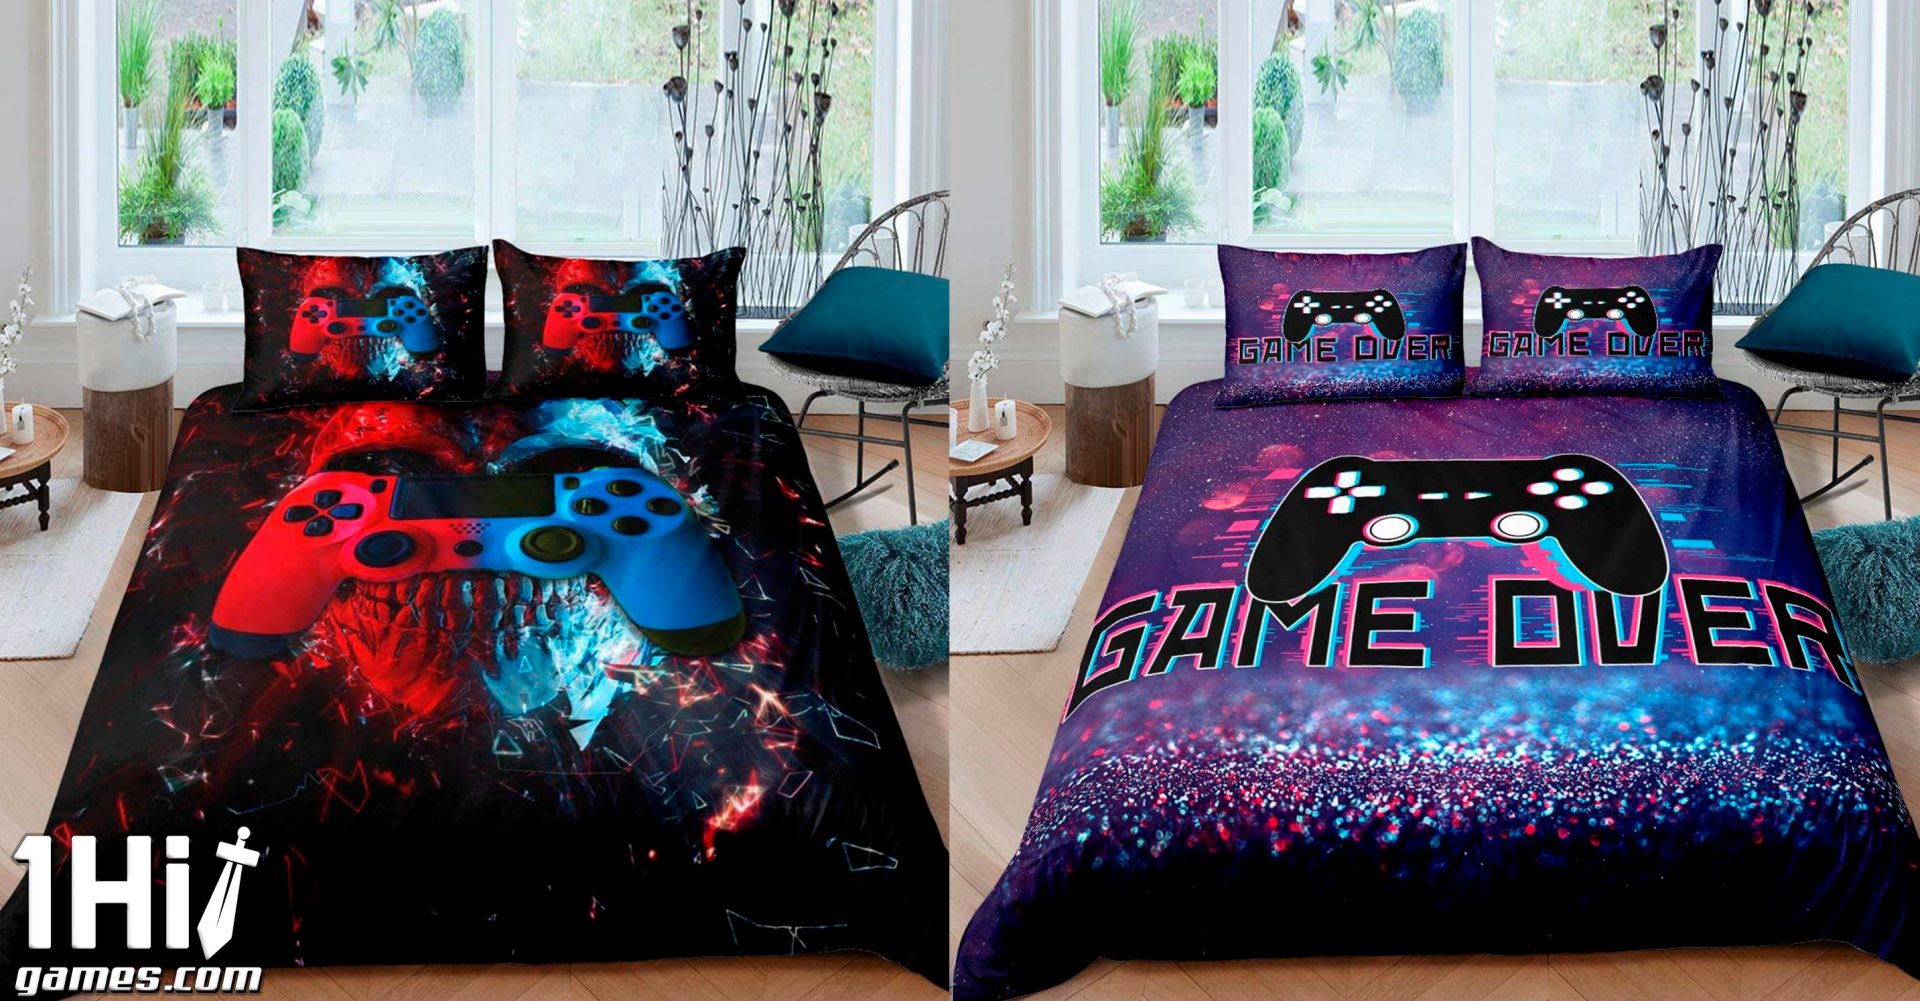 Jogo de cama Gamer com diversas estampas para seu quarto dos sonhos